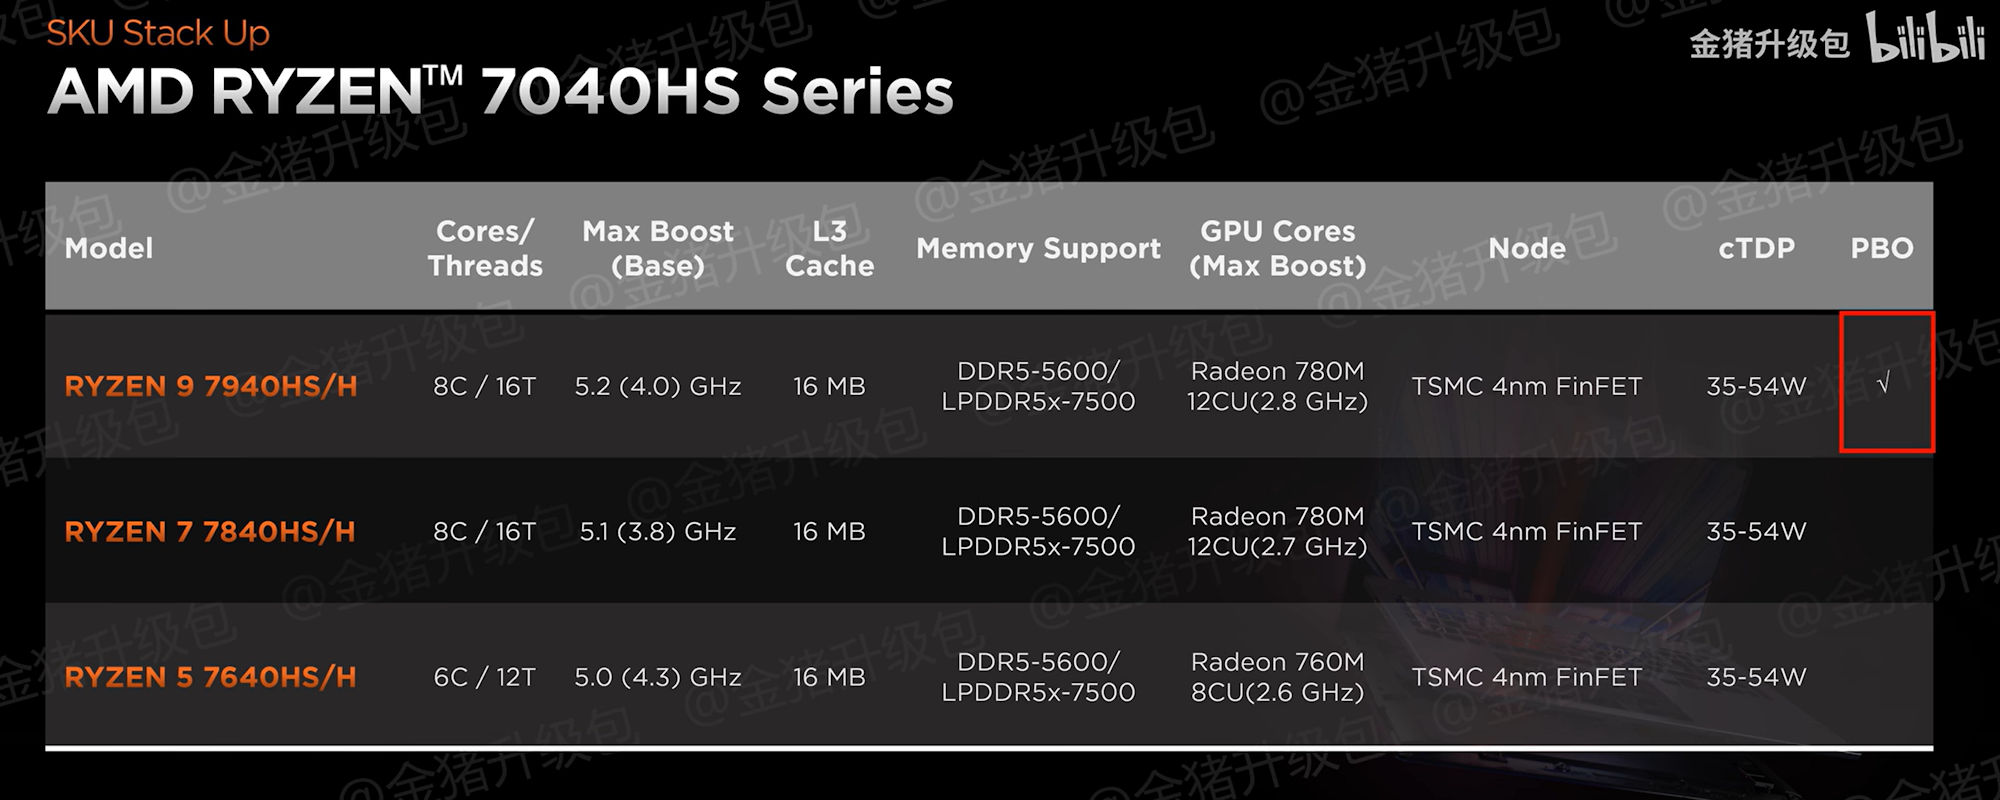 AMD-RYZEN-7040H-SPECS.jpg